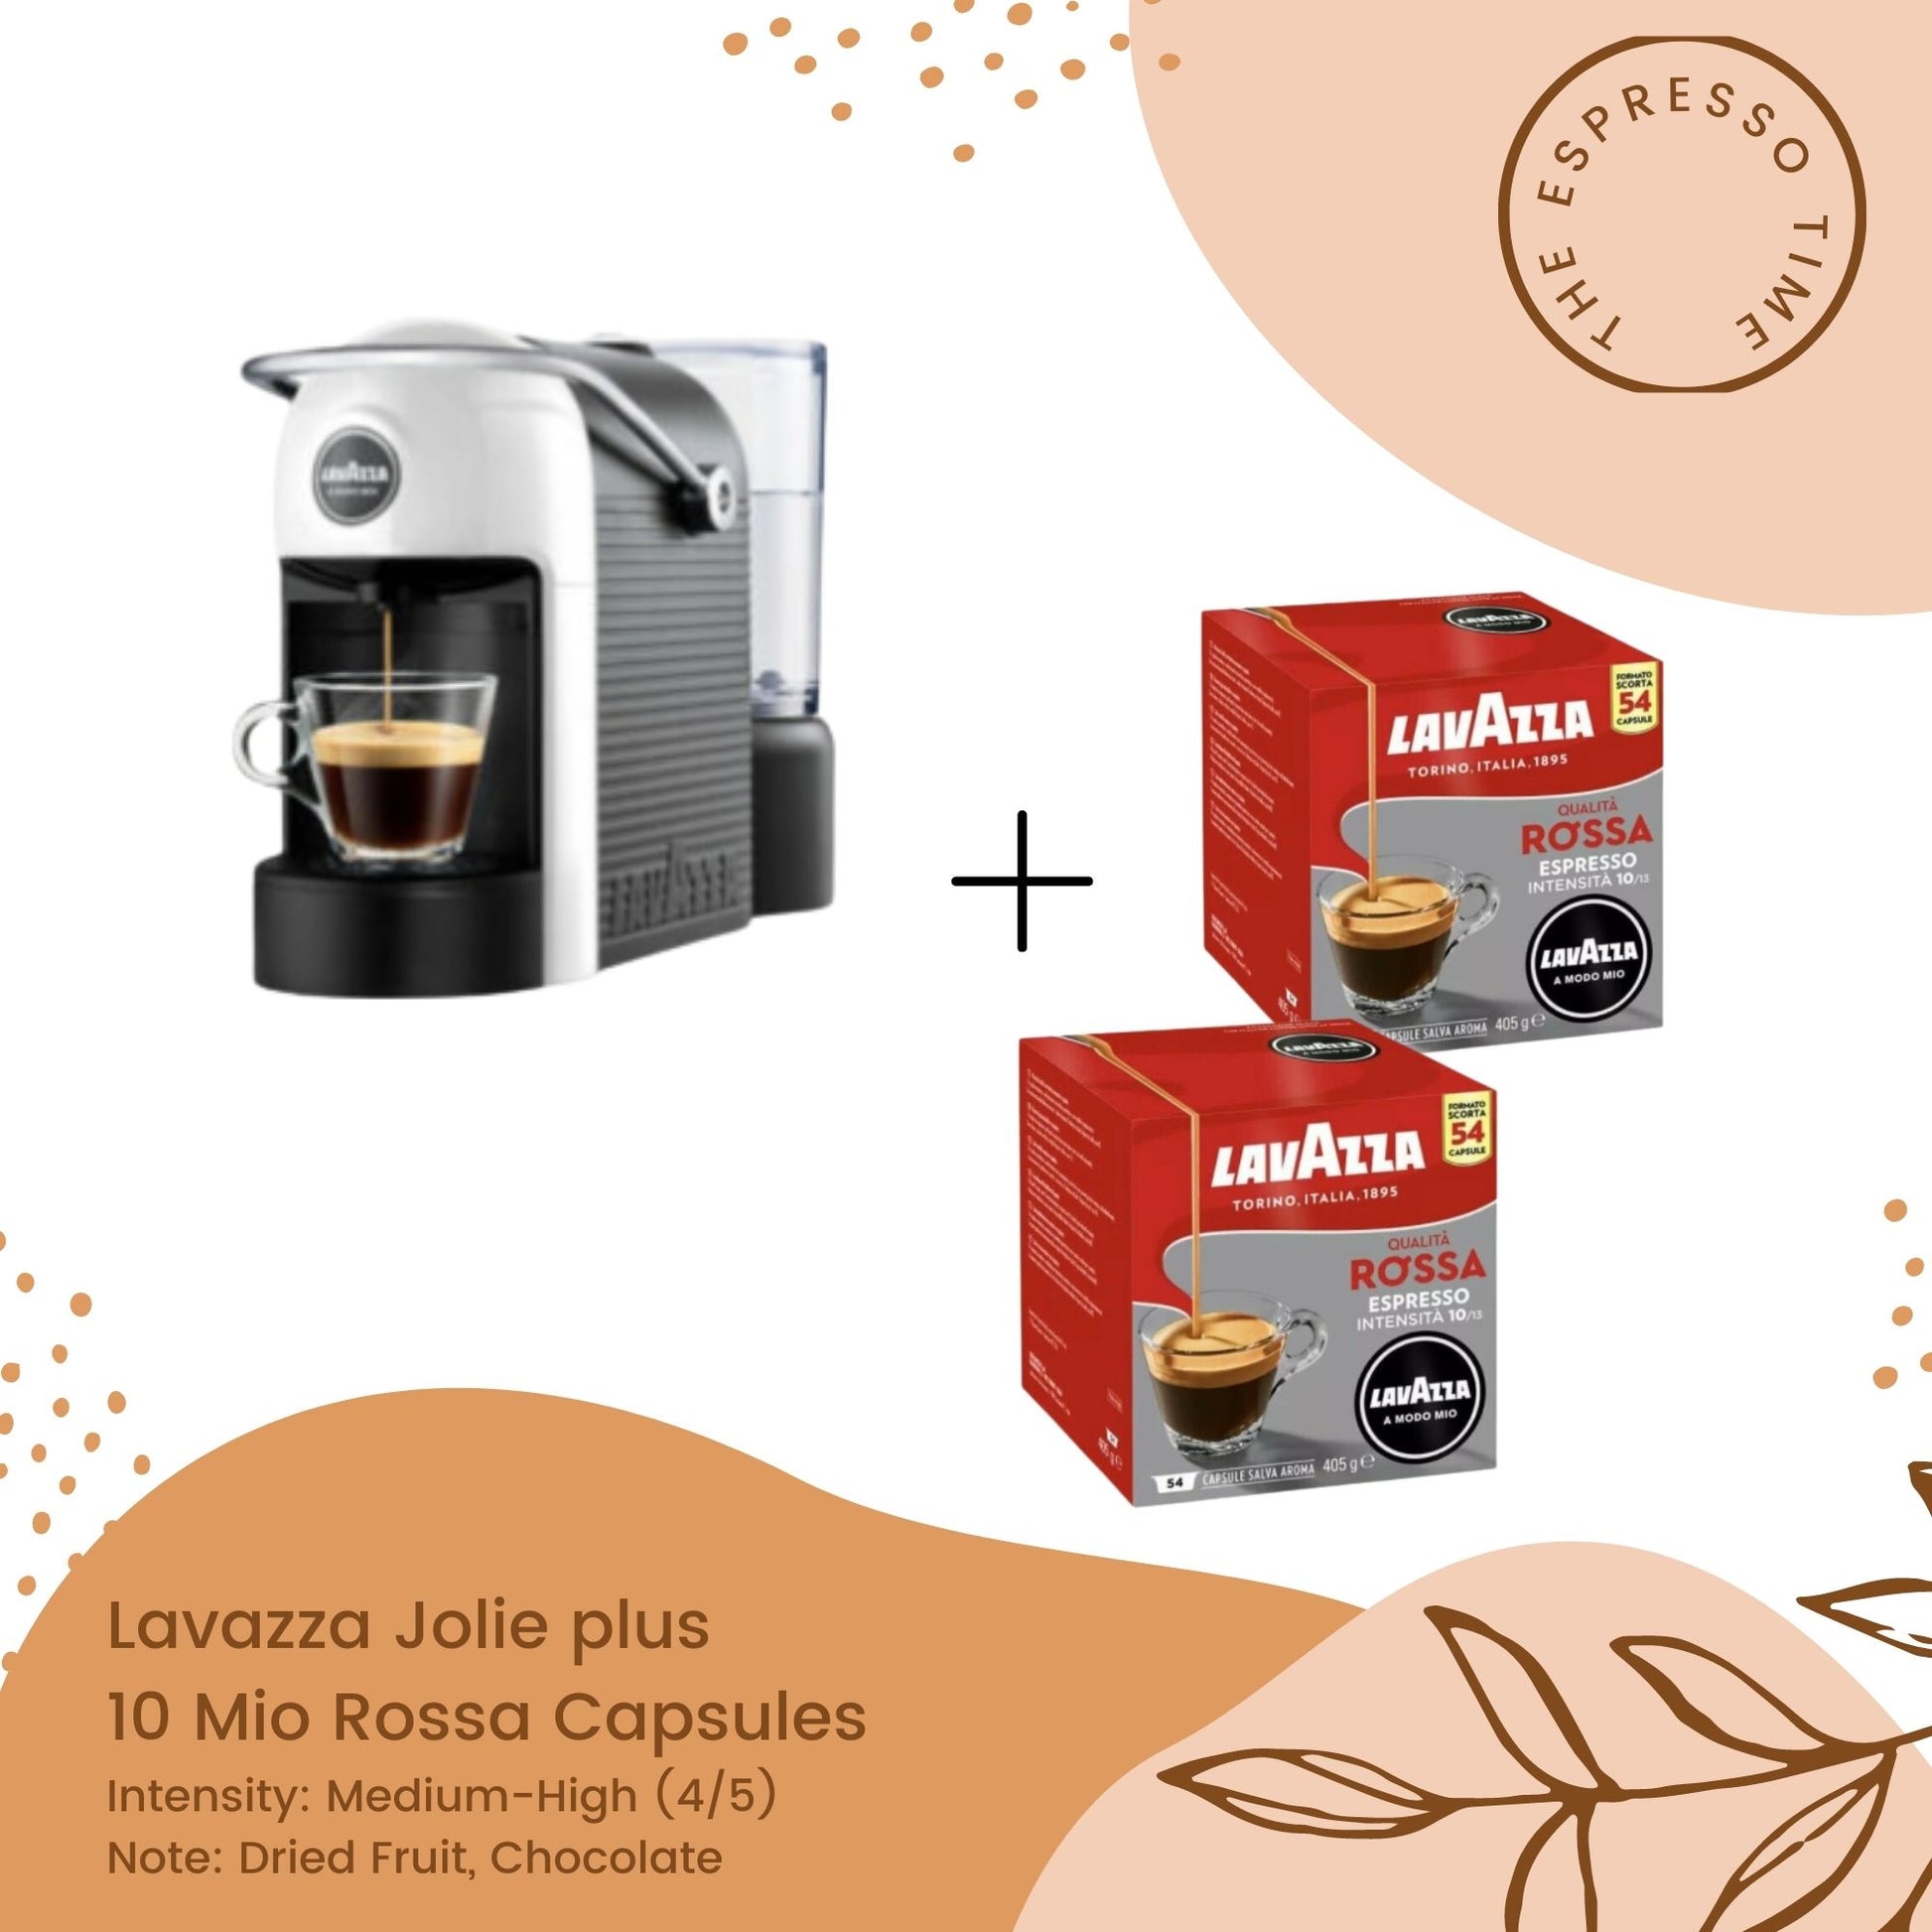 Lavazza Jolie Coffee Machine – The Espresso Time